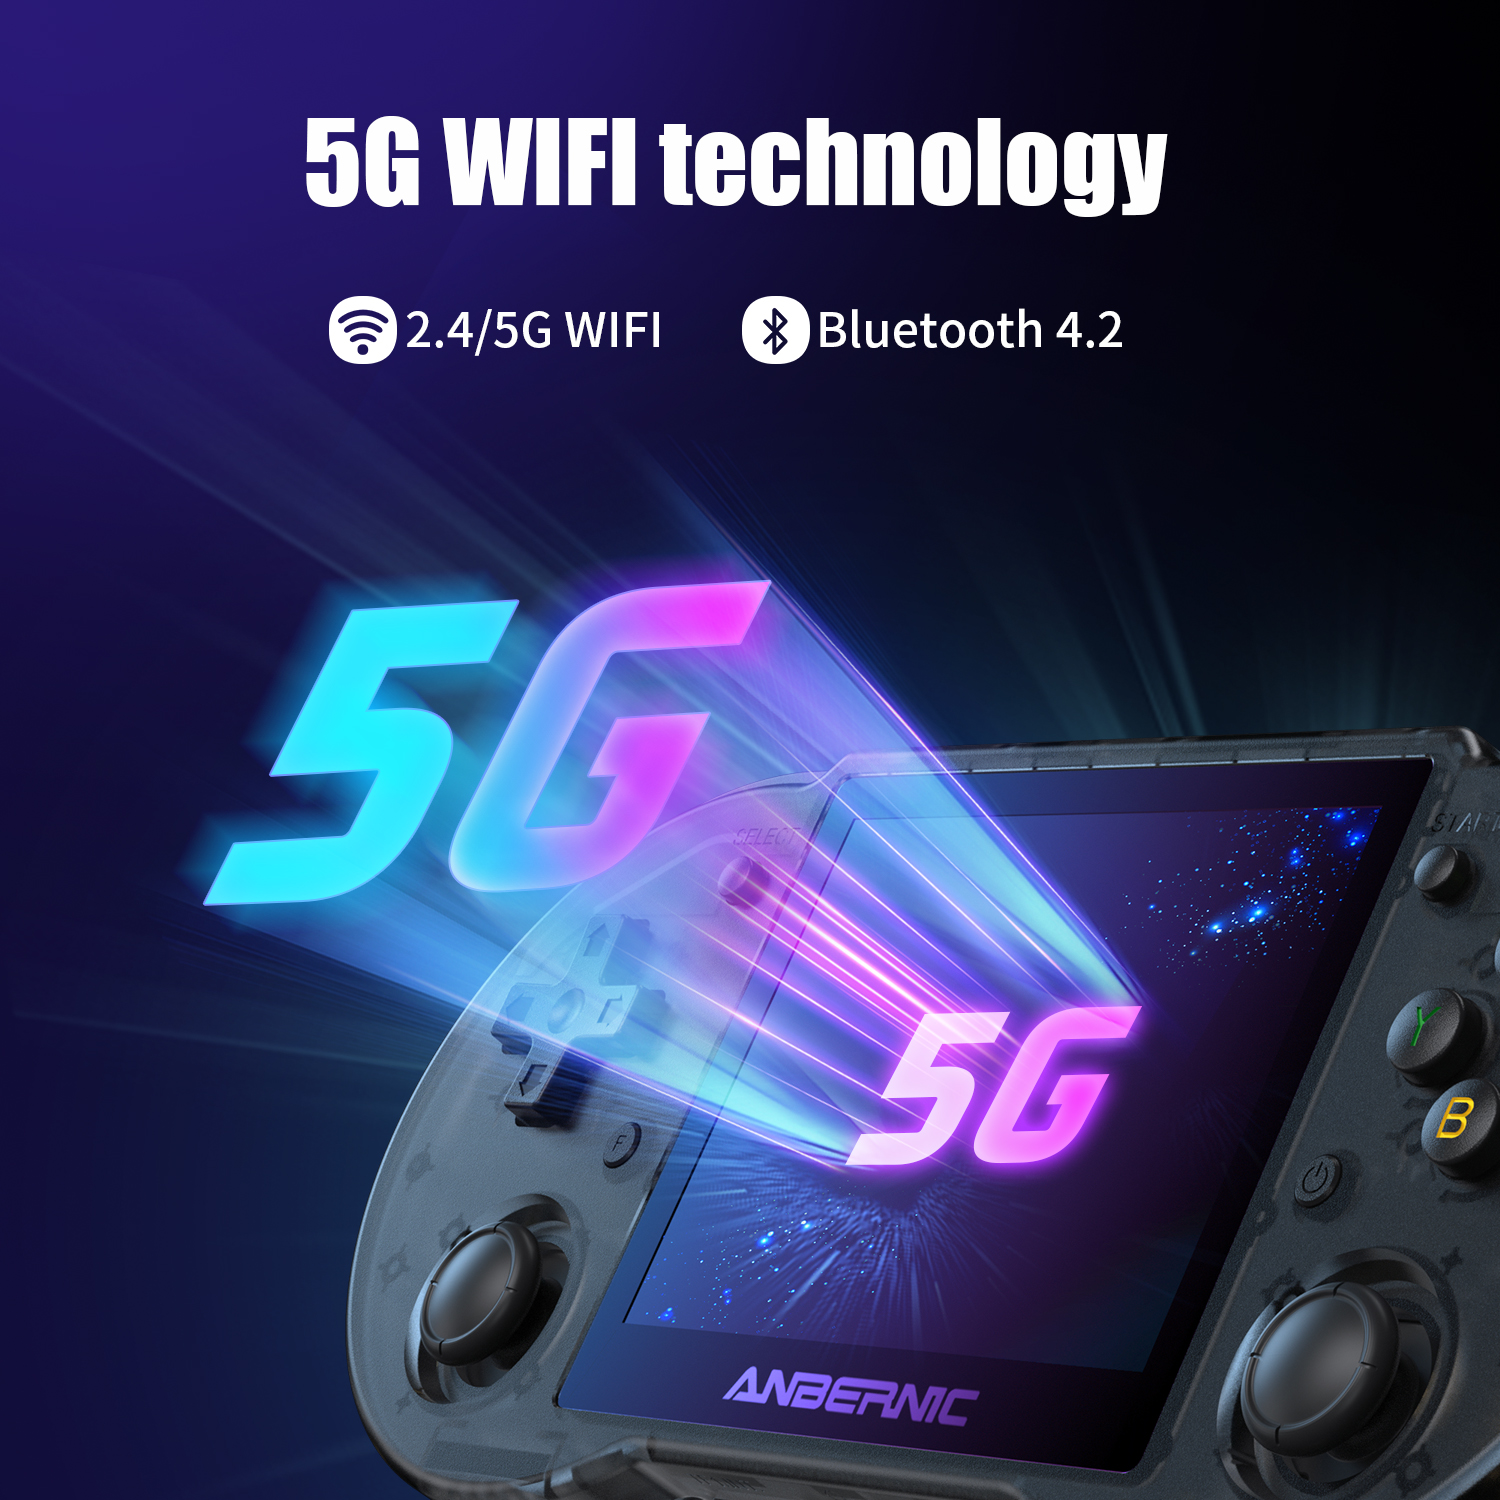 RG353P supporta la tecnologia 5G WiFI